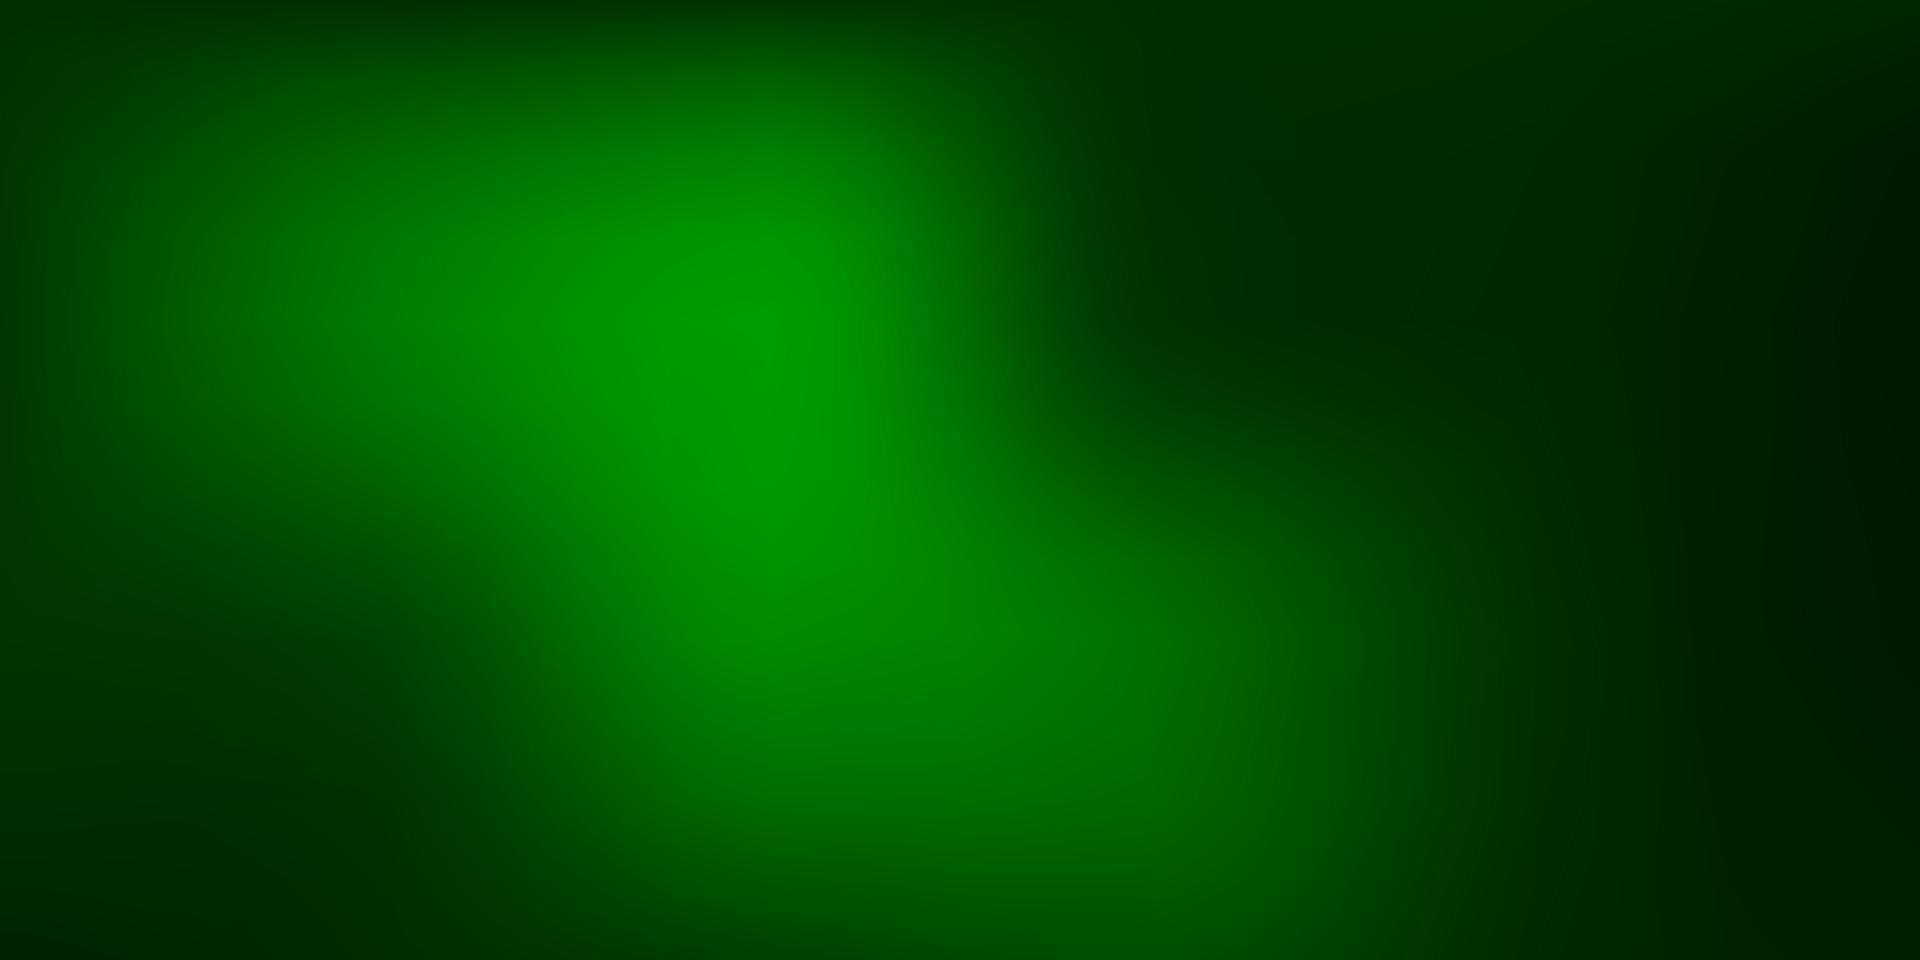 toile de fond flou abstrait vecteur vert foncé.